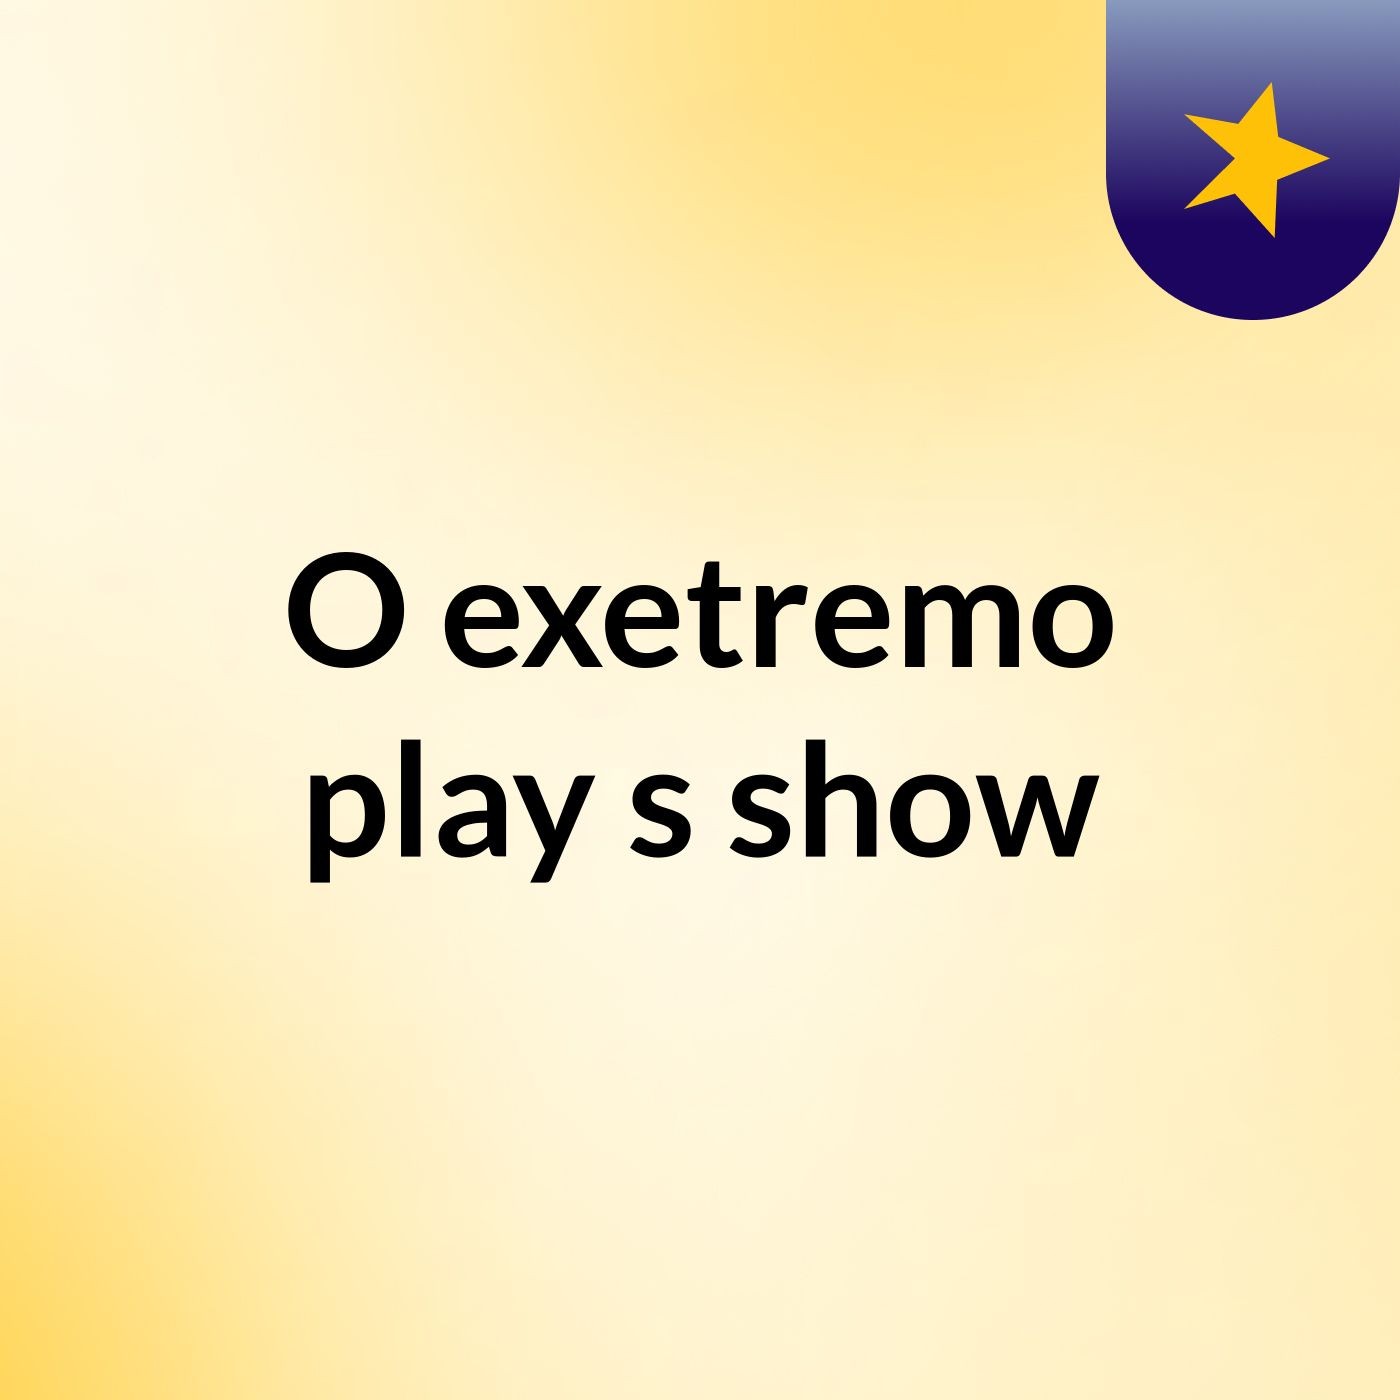 O exetremo play's show